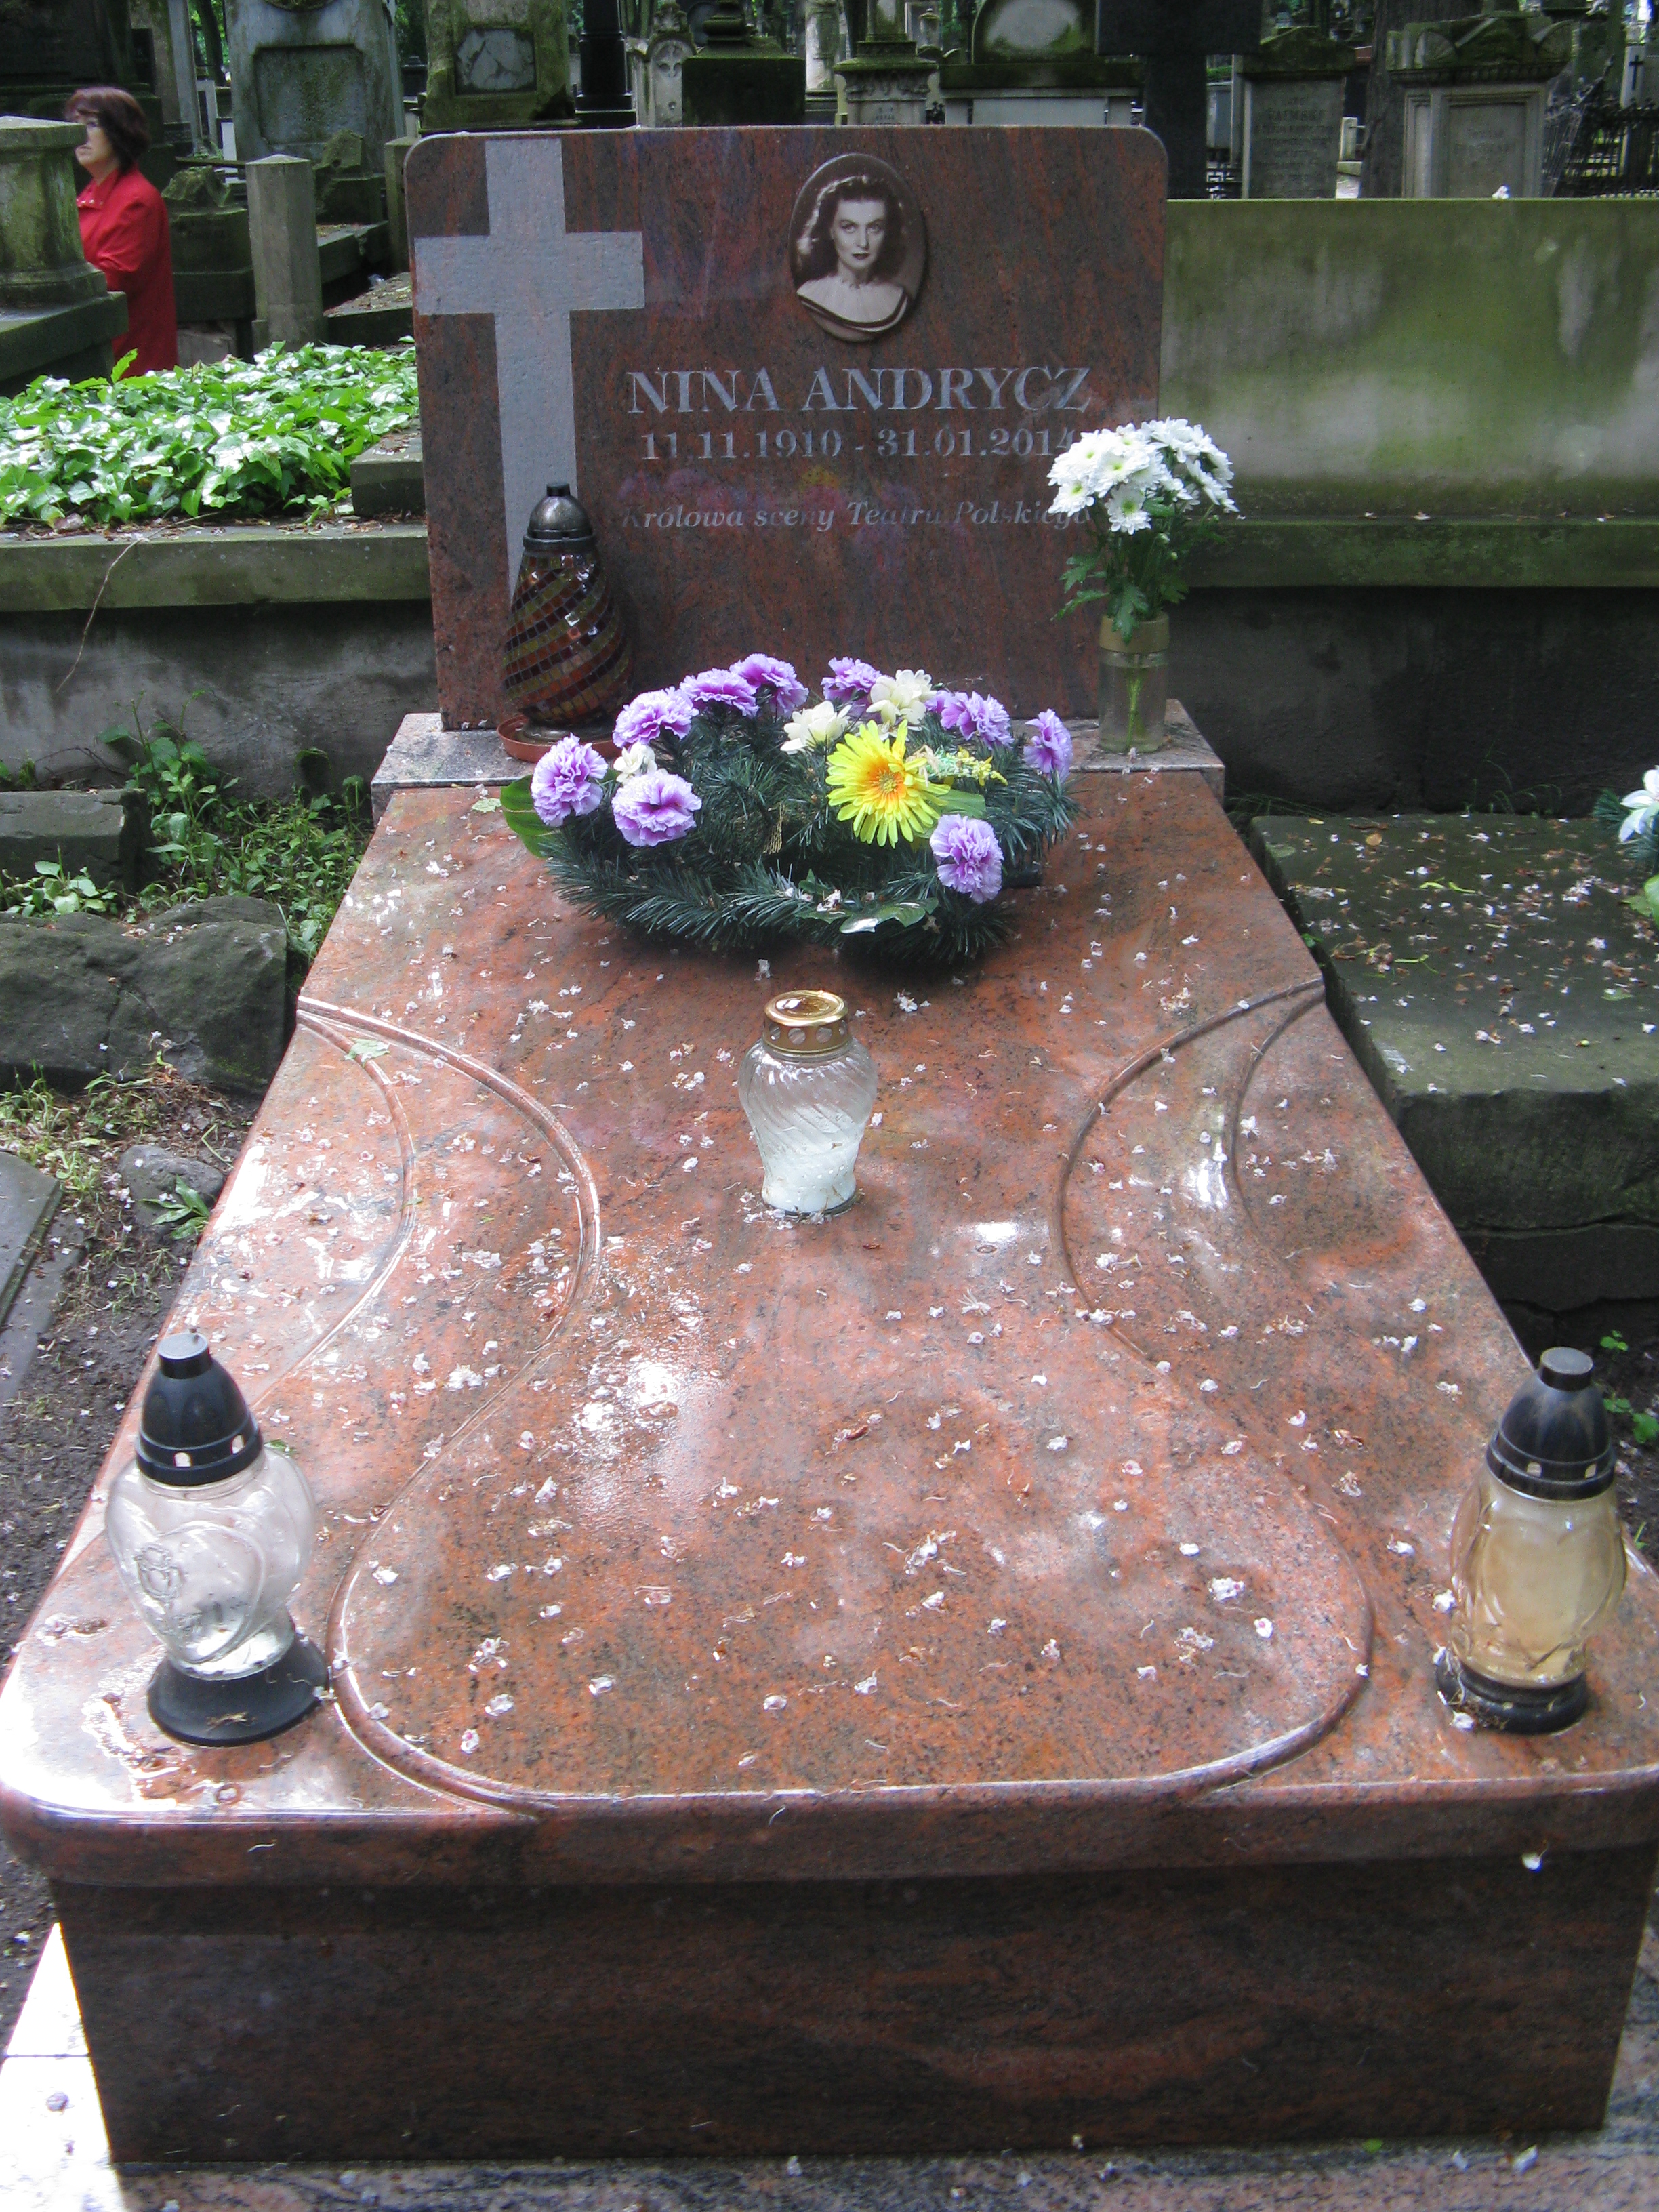 Wikipedia, Nina Andrycz, Powzki Cemetery - A, Self-published work